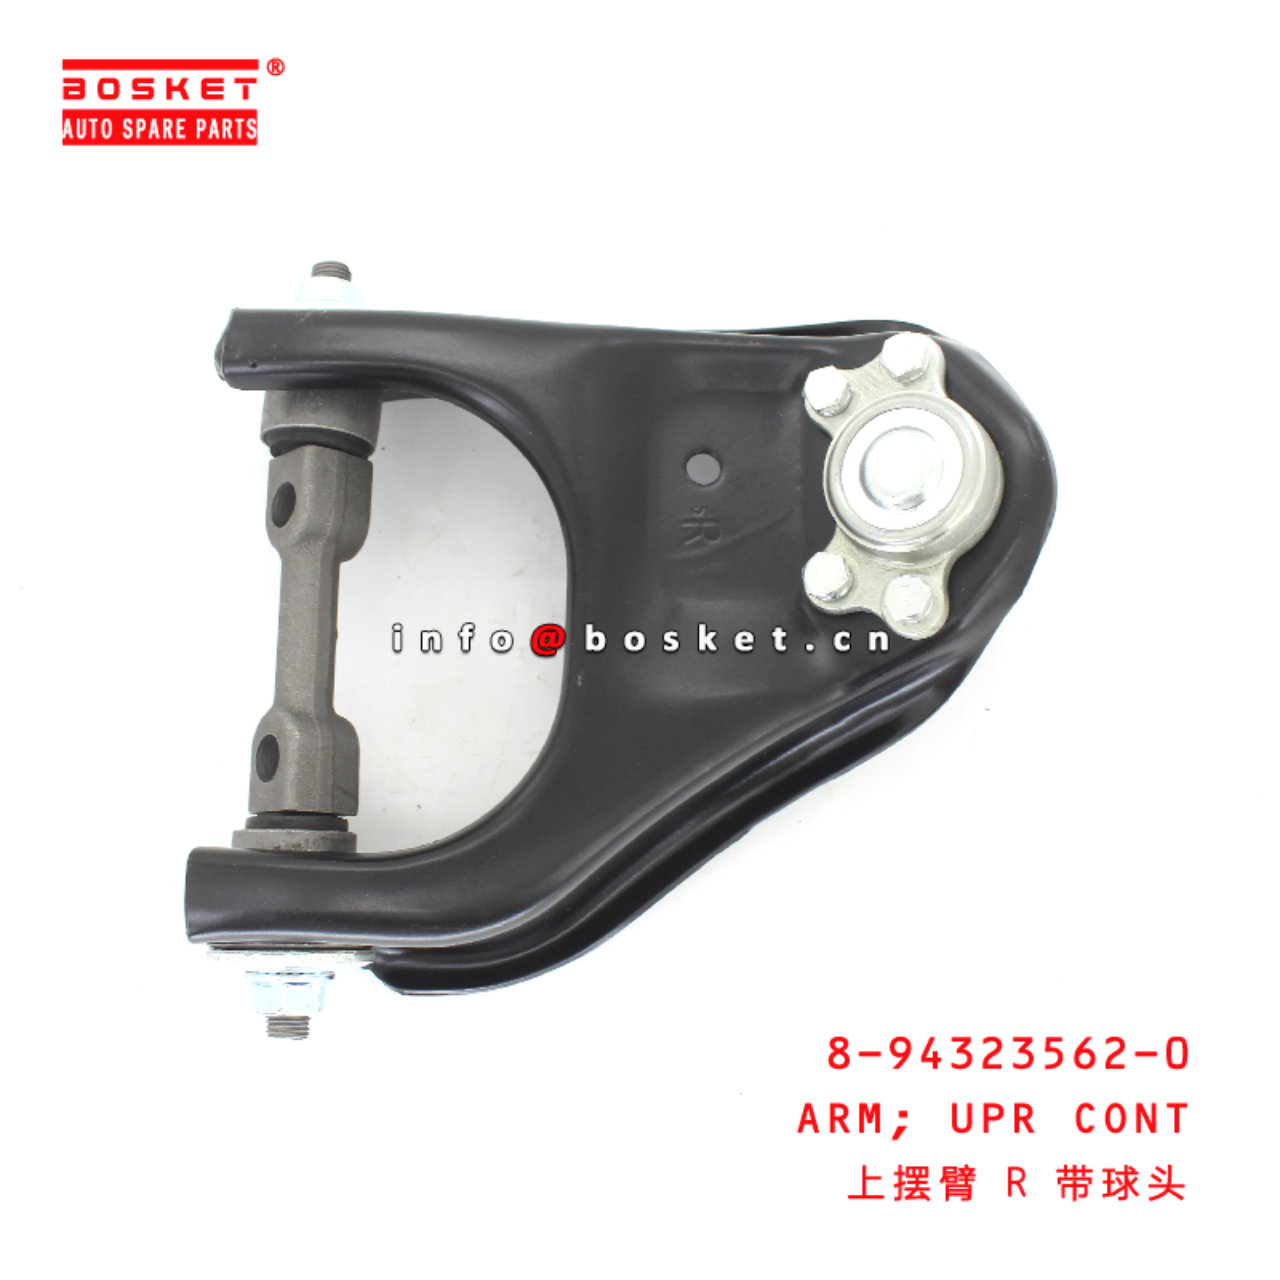 8-94323562-0 Upper Control Arm suitable for ISUZU D-MAX 8943235620